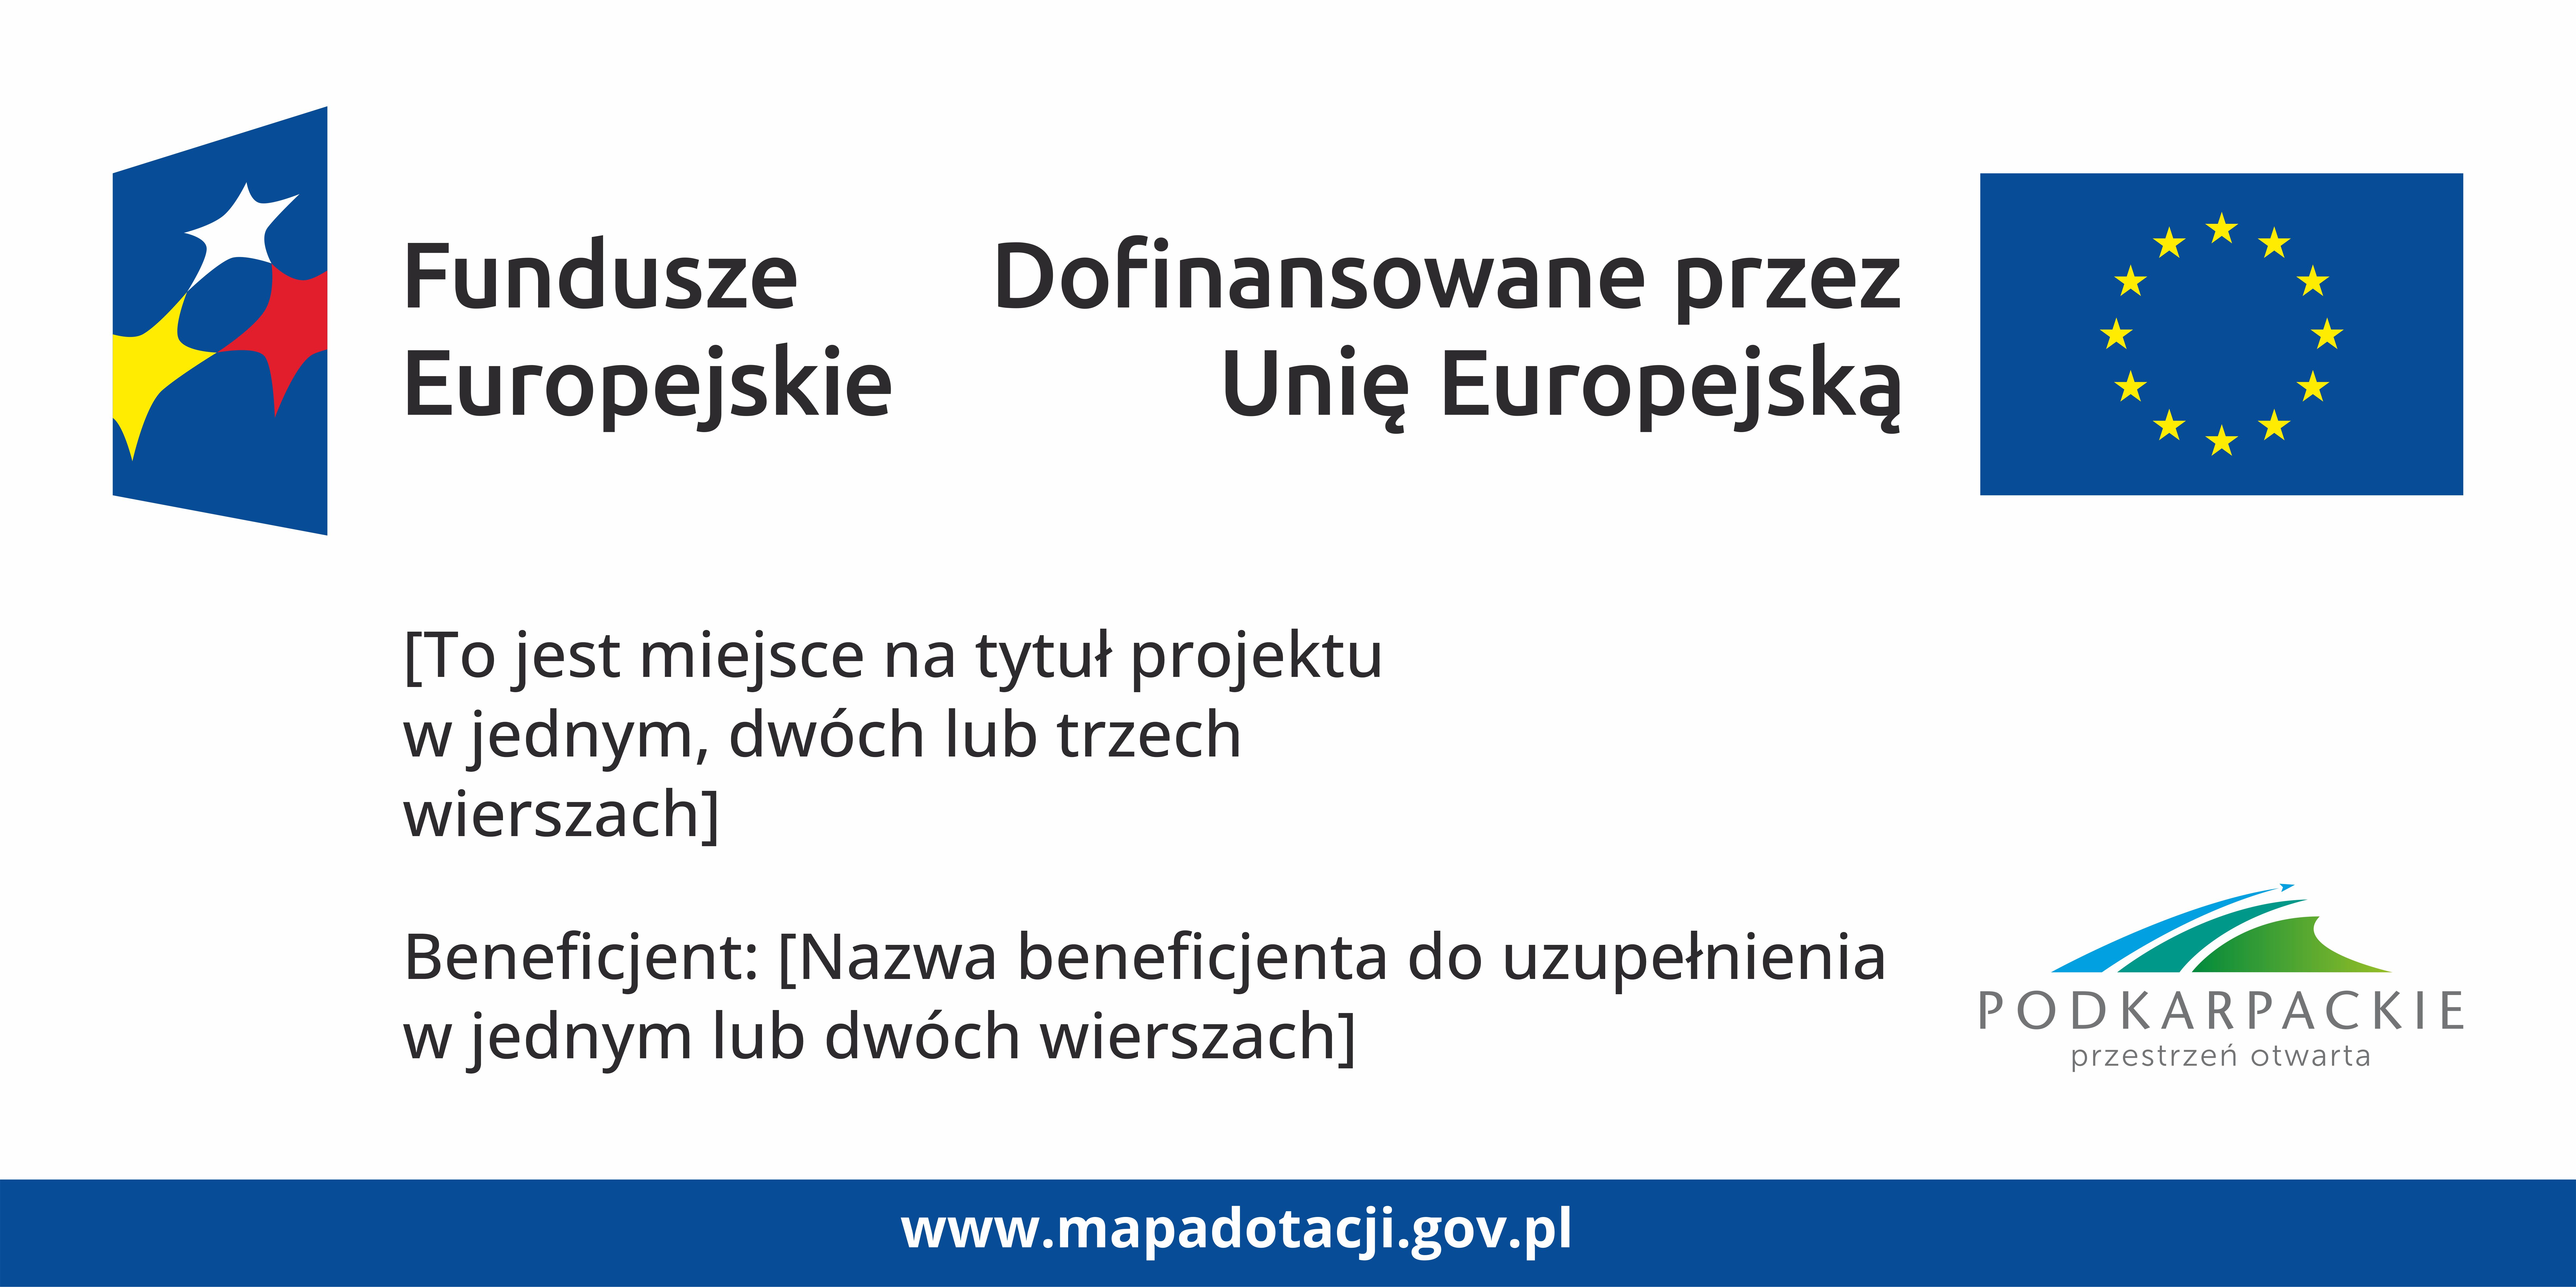 Wzór tablicy informacyjnej dla programu FEP 2021-2027